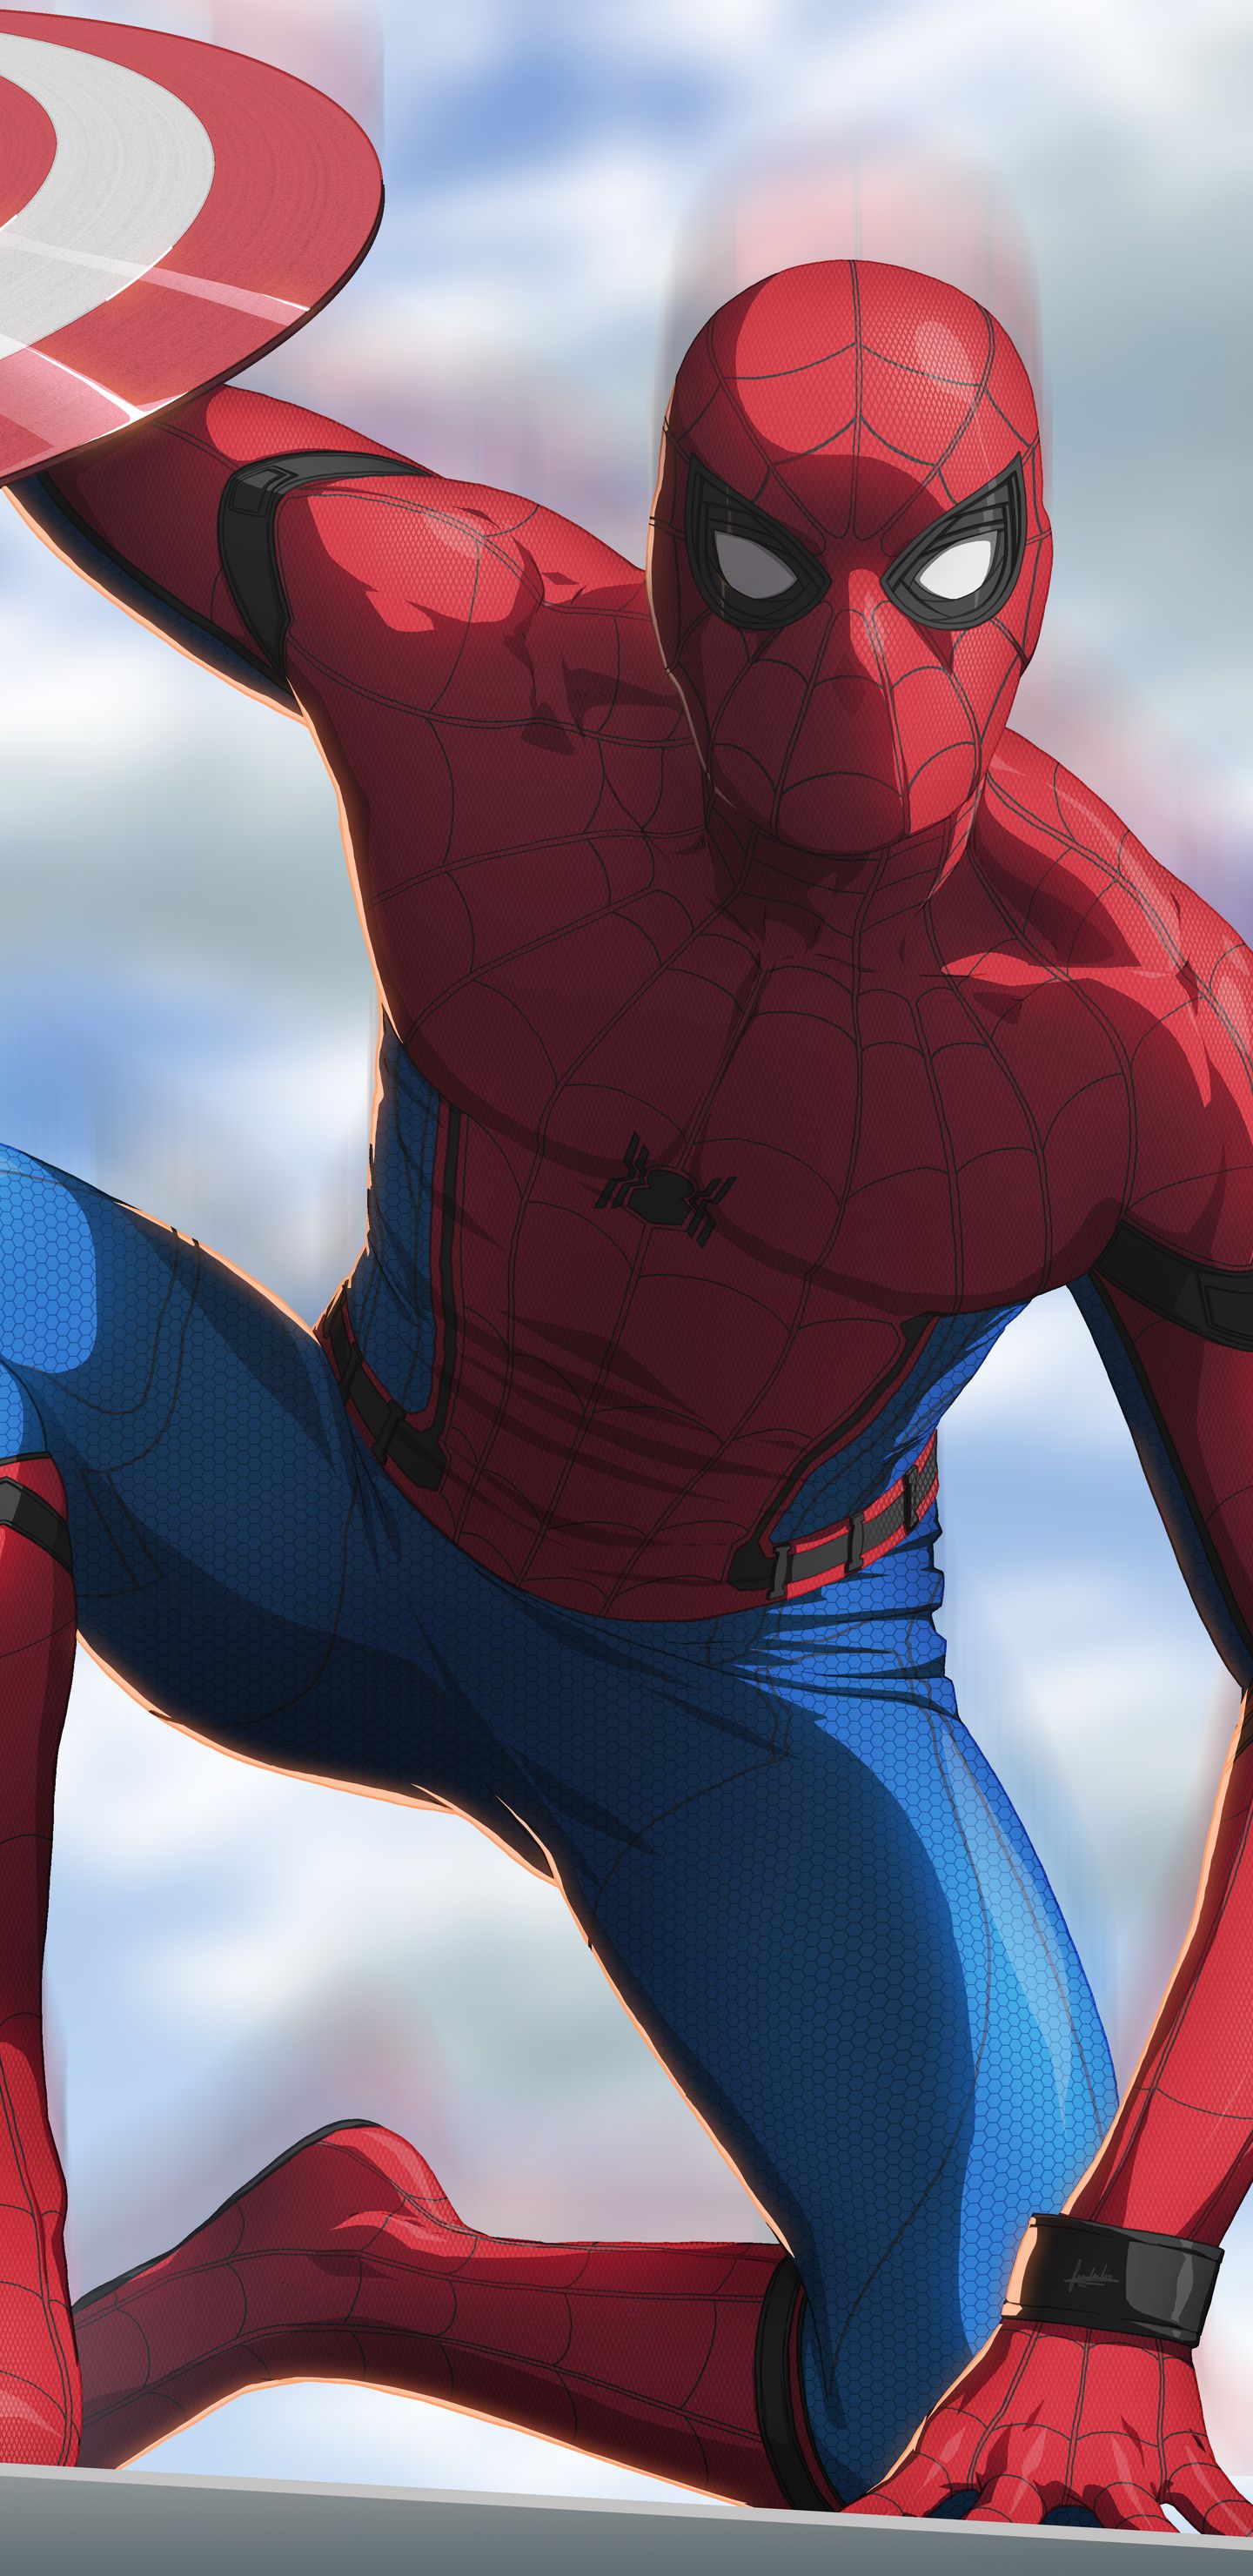 Spiderman Civil War Artwork 8k Samsung Galaxy Note 8